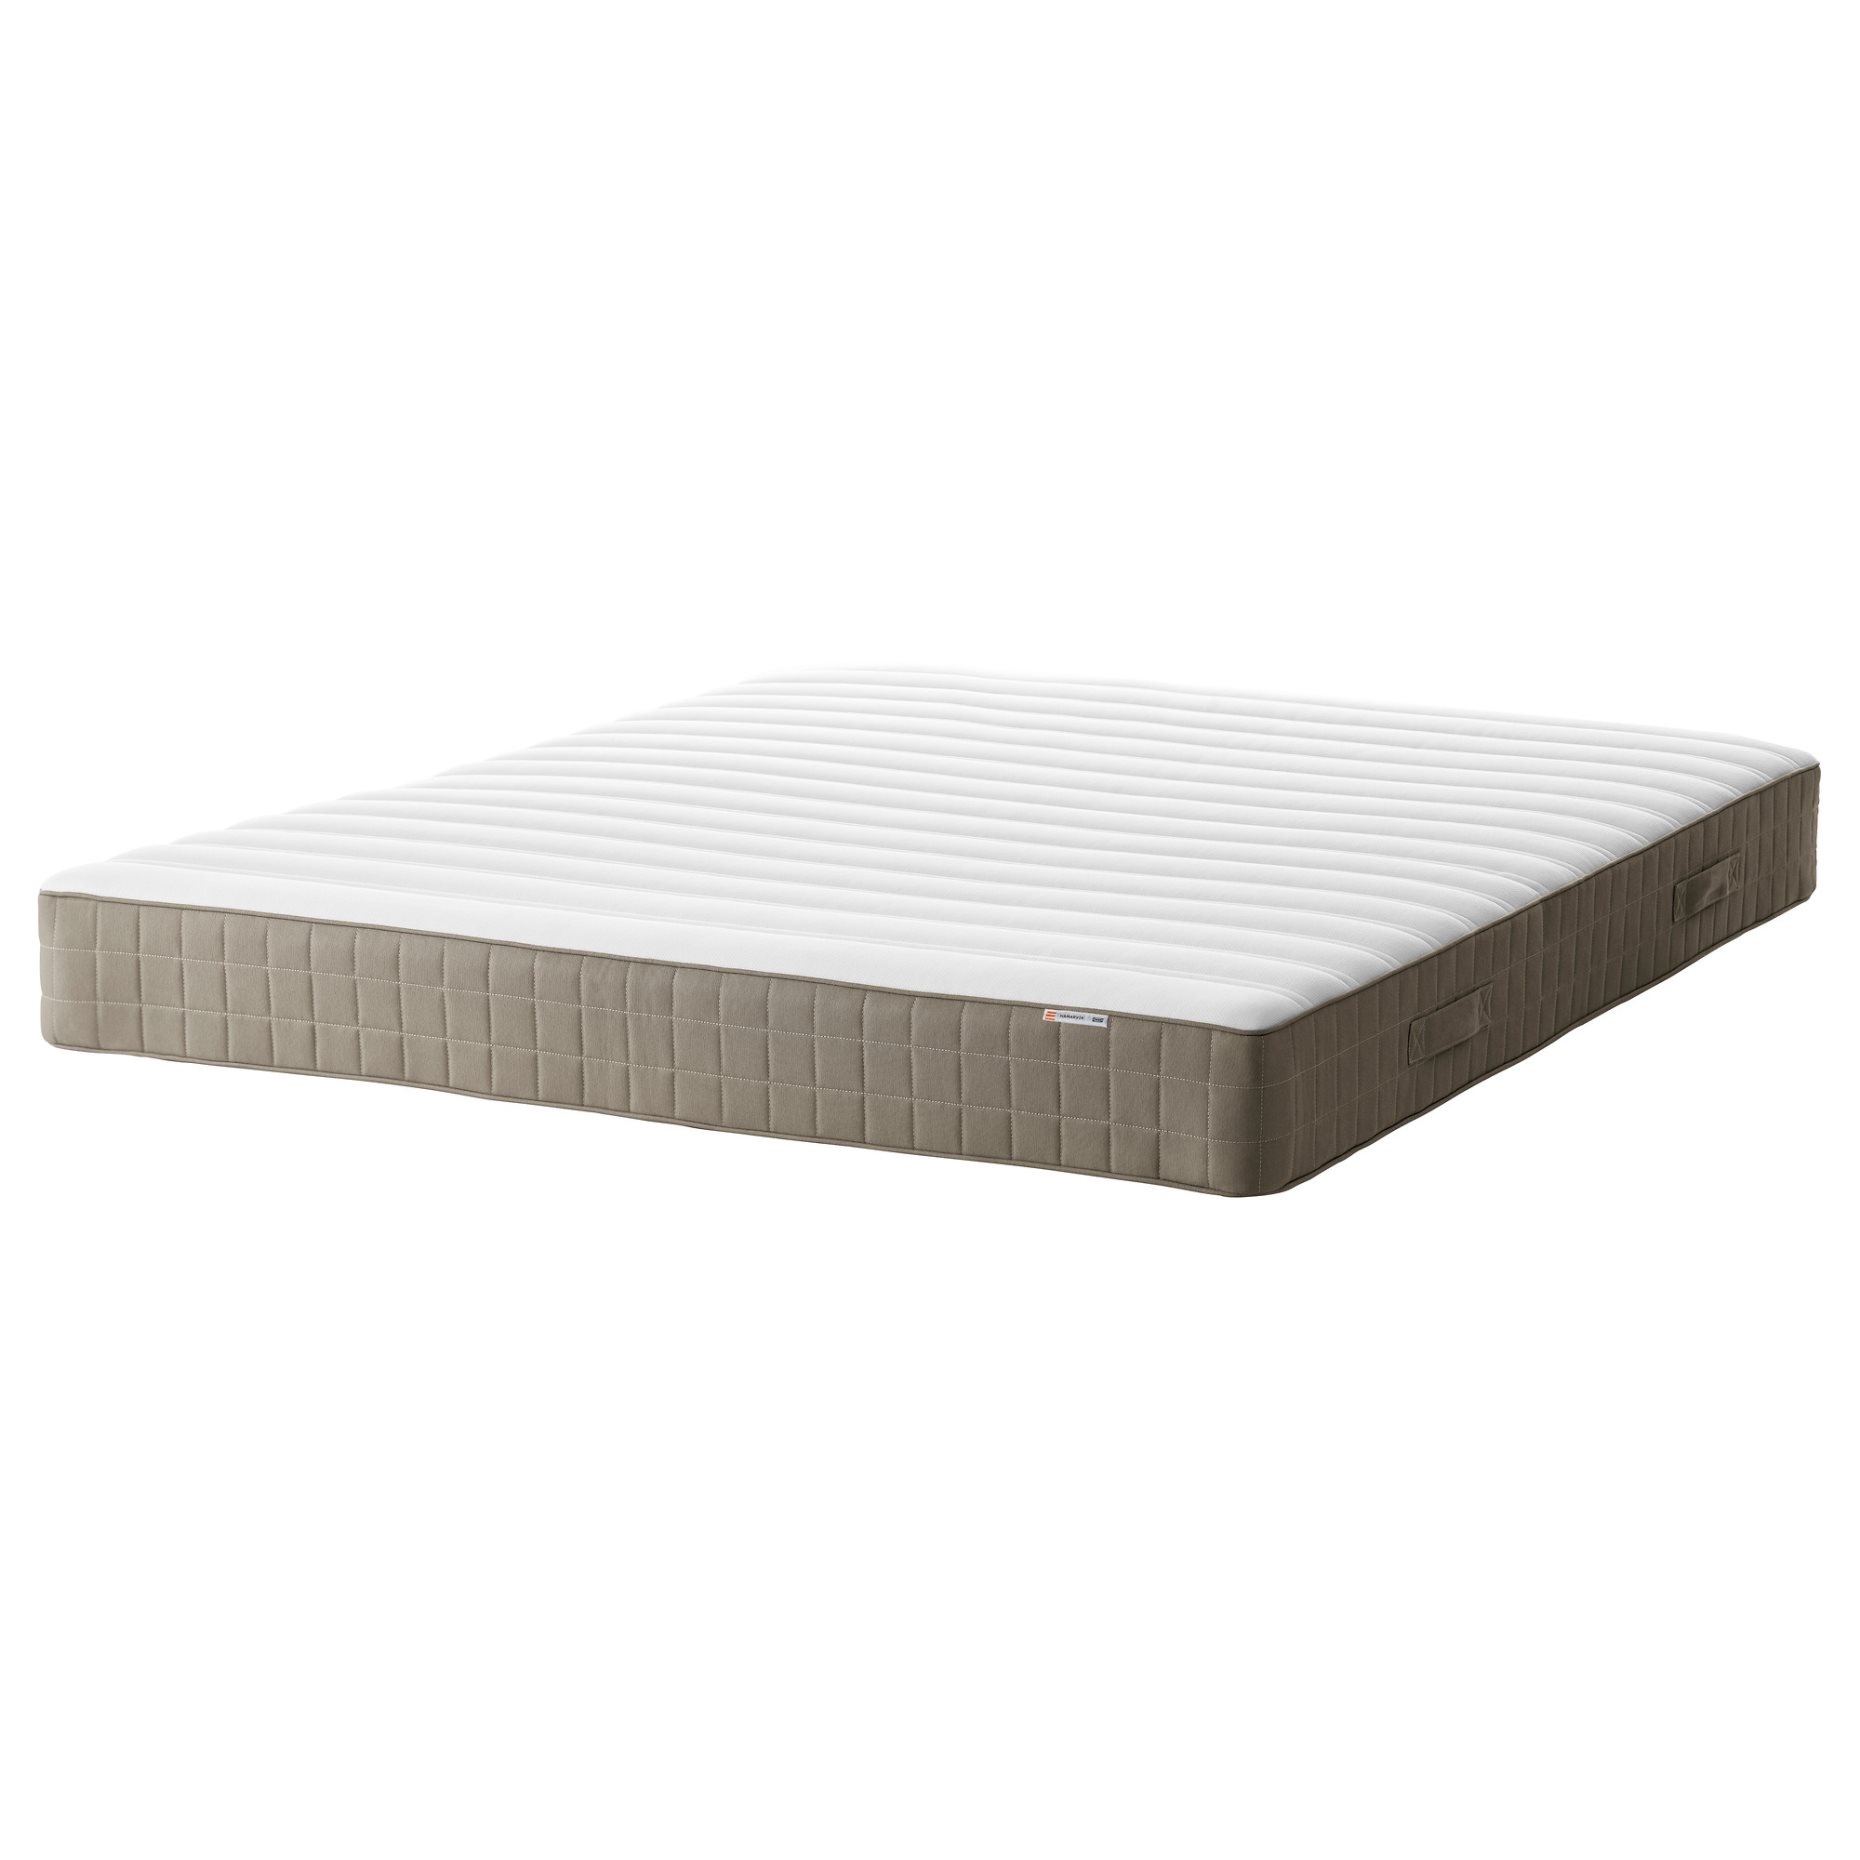 HAMARVIK, sprung mattress, firm, 502.444.92